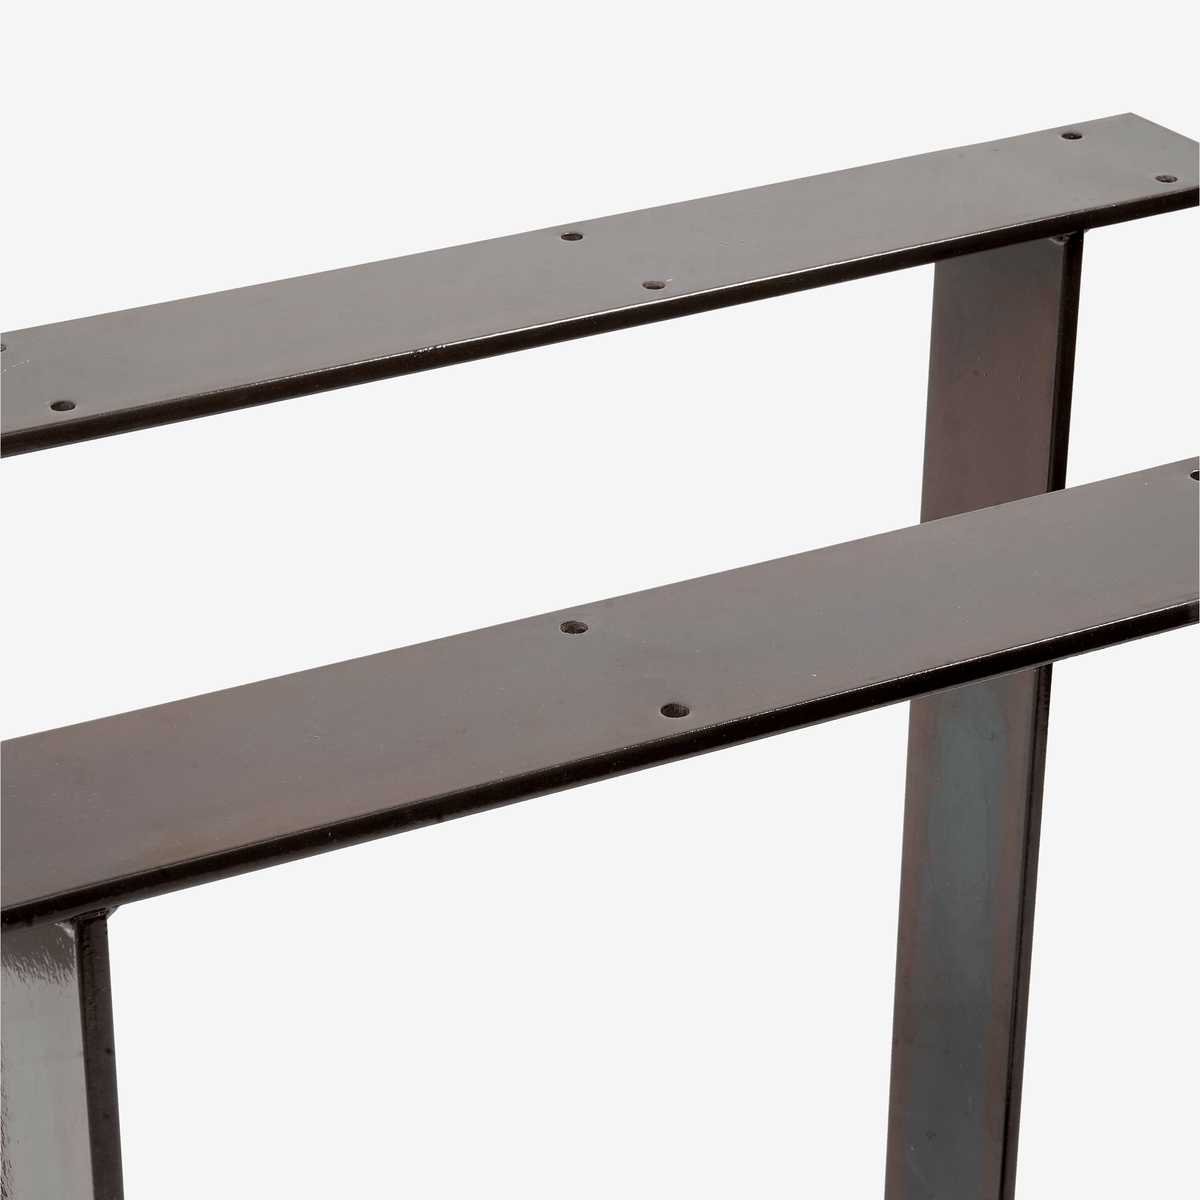 Tisch Fußgestell aus rohem transparent lackiertem Stahl. Rahmen aus Flachstahl mit Schraubenlöchern